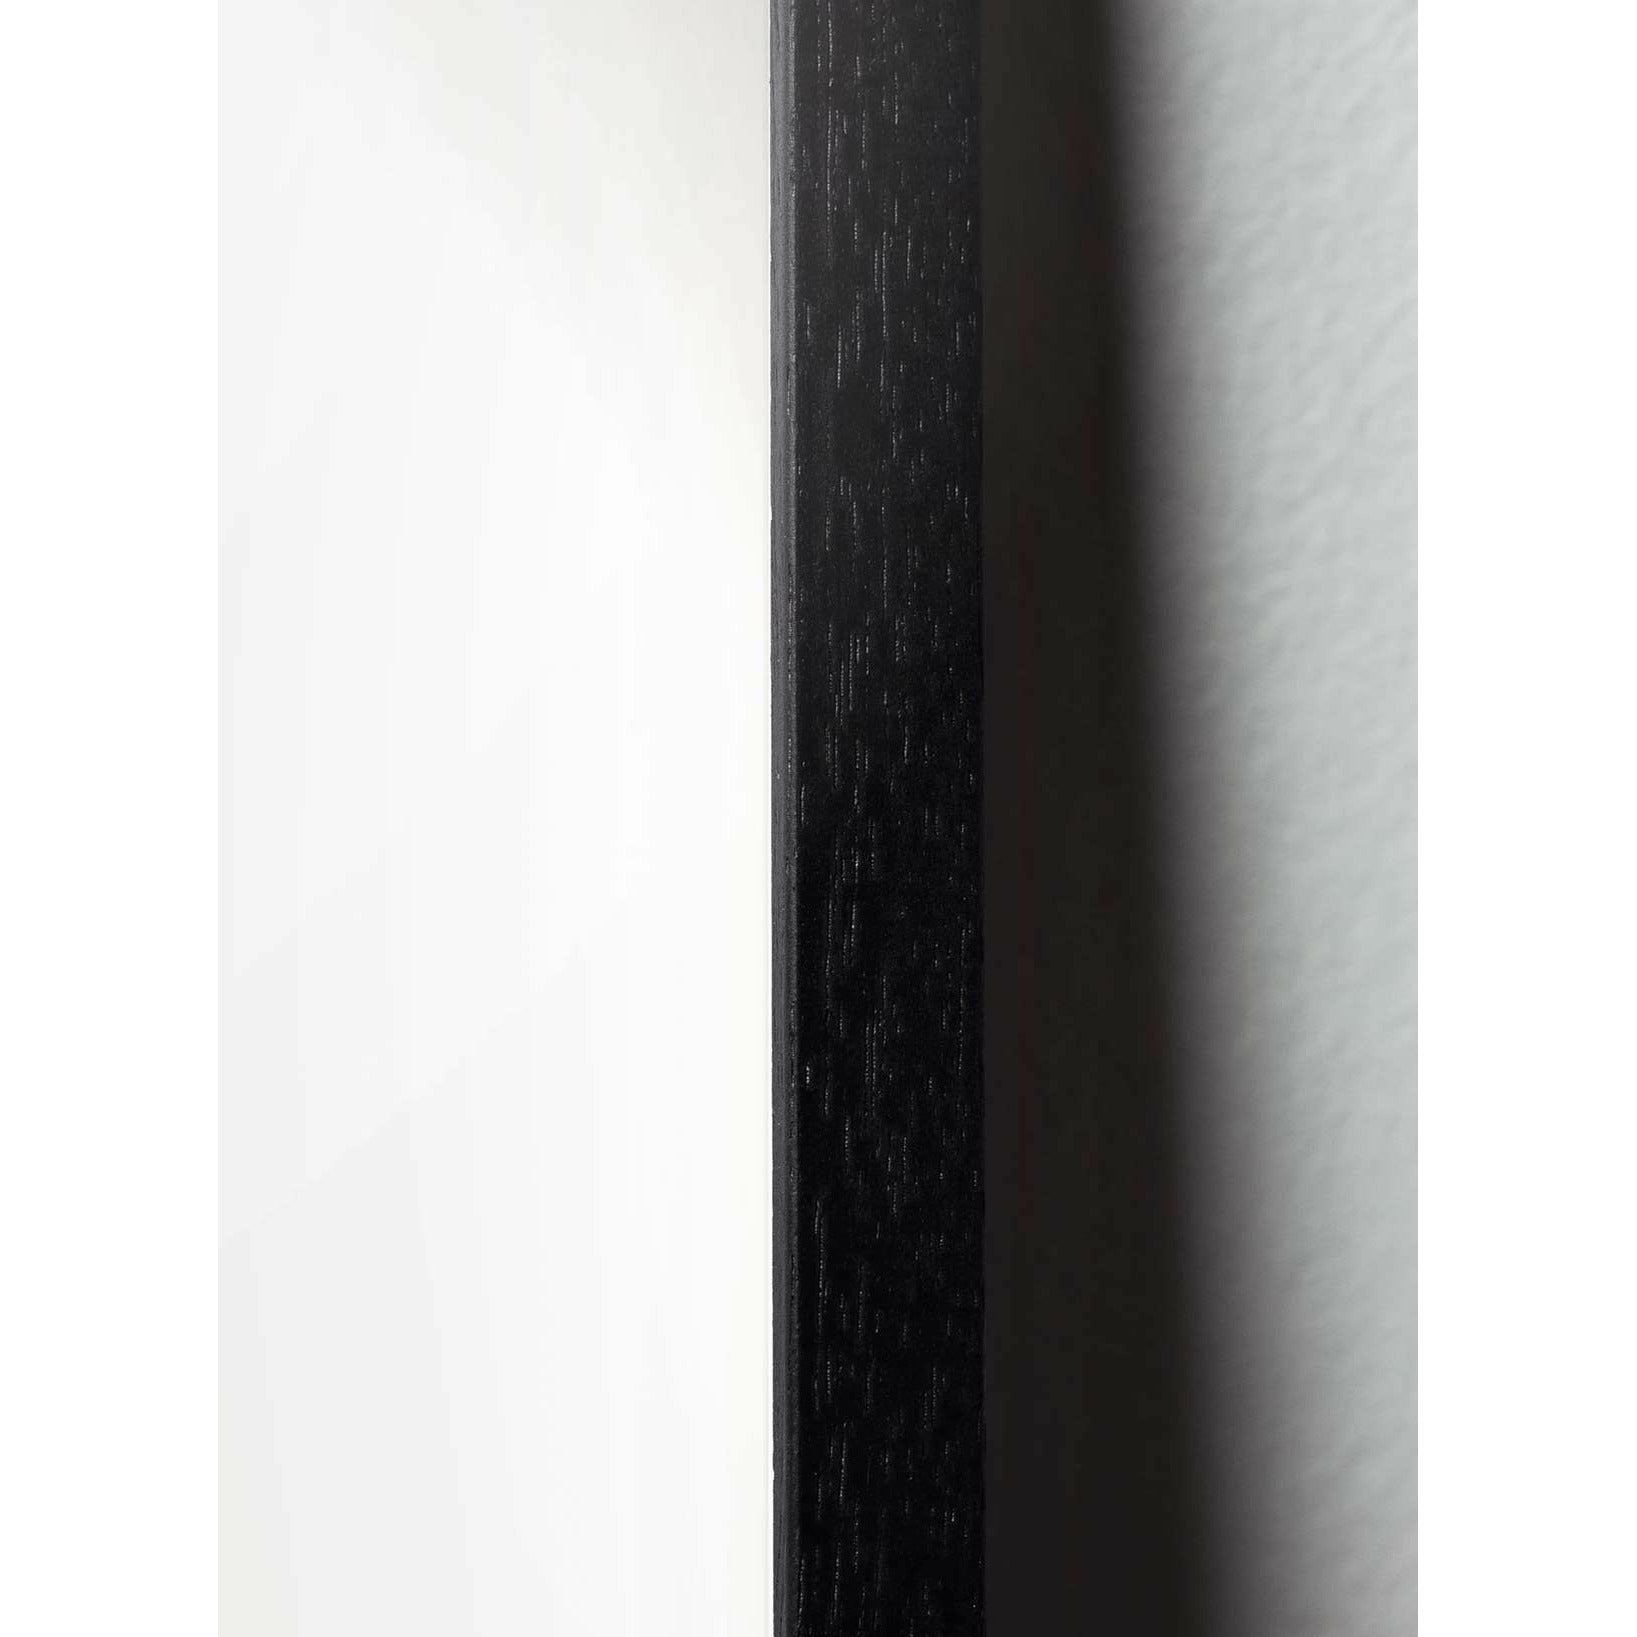 brainchild Drop Classic Poster, Rahmen in schwarz lackiertem Holz 30x40 cm, sandfarbener Hintergrund